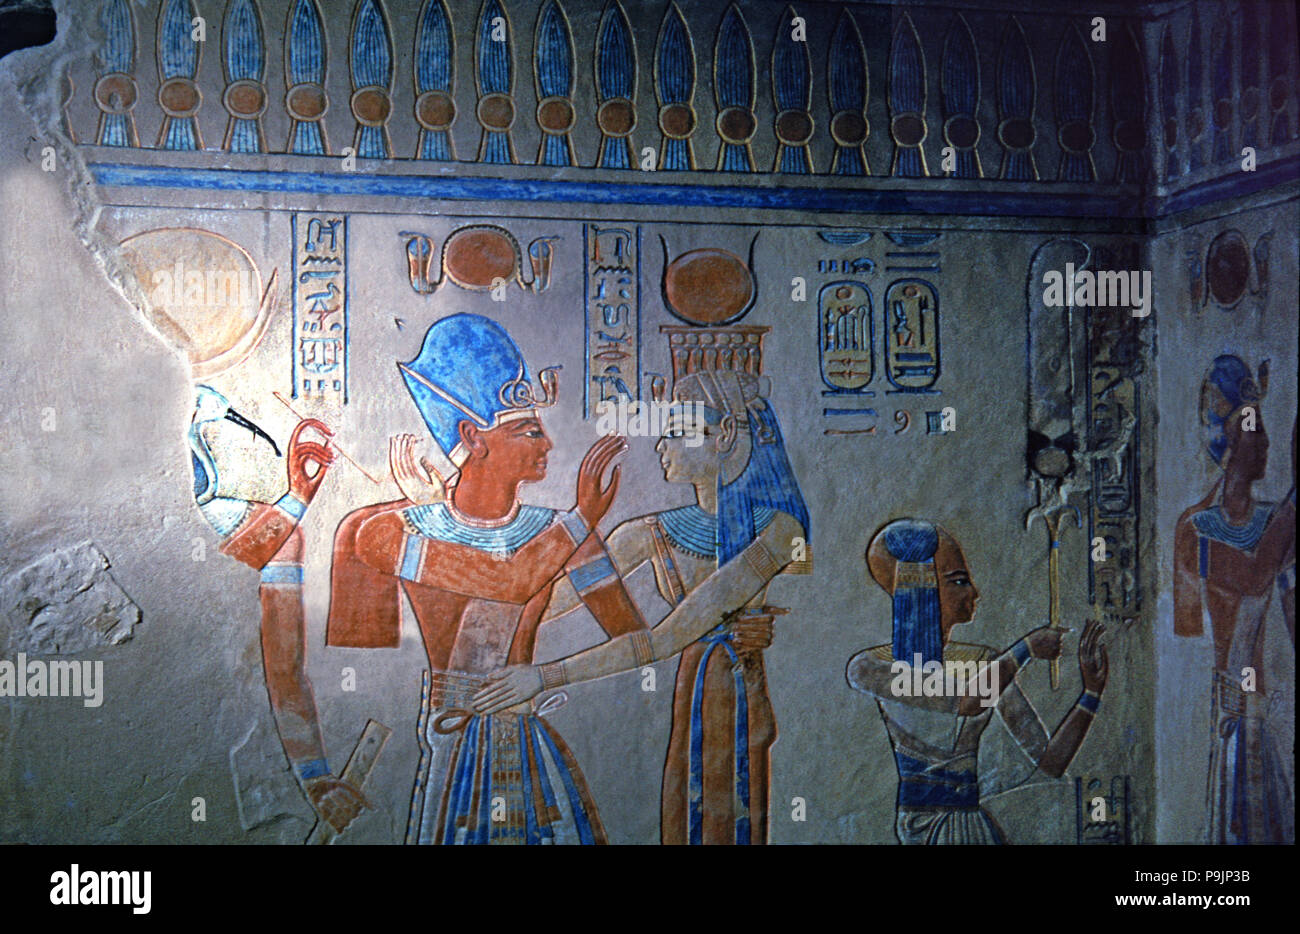 Frescoes from the tomb of Amon Her Kopechef, son of Ramses III. Stock Photo